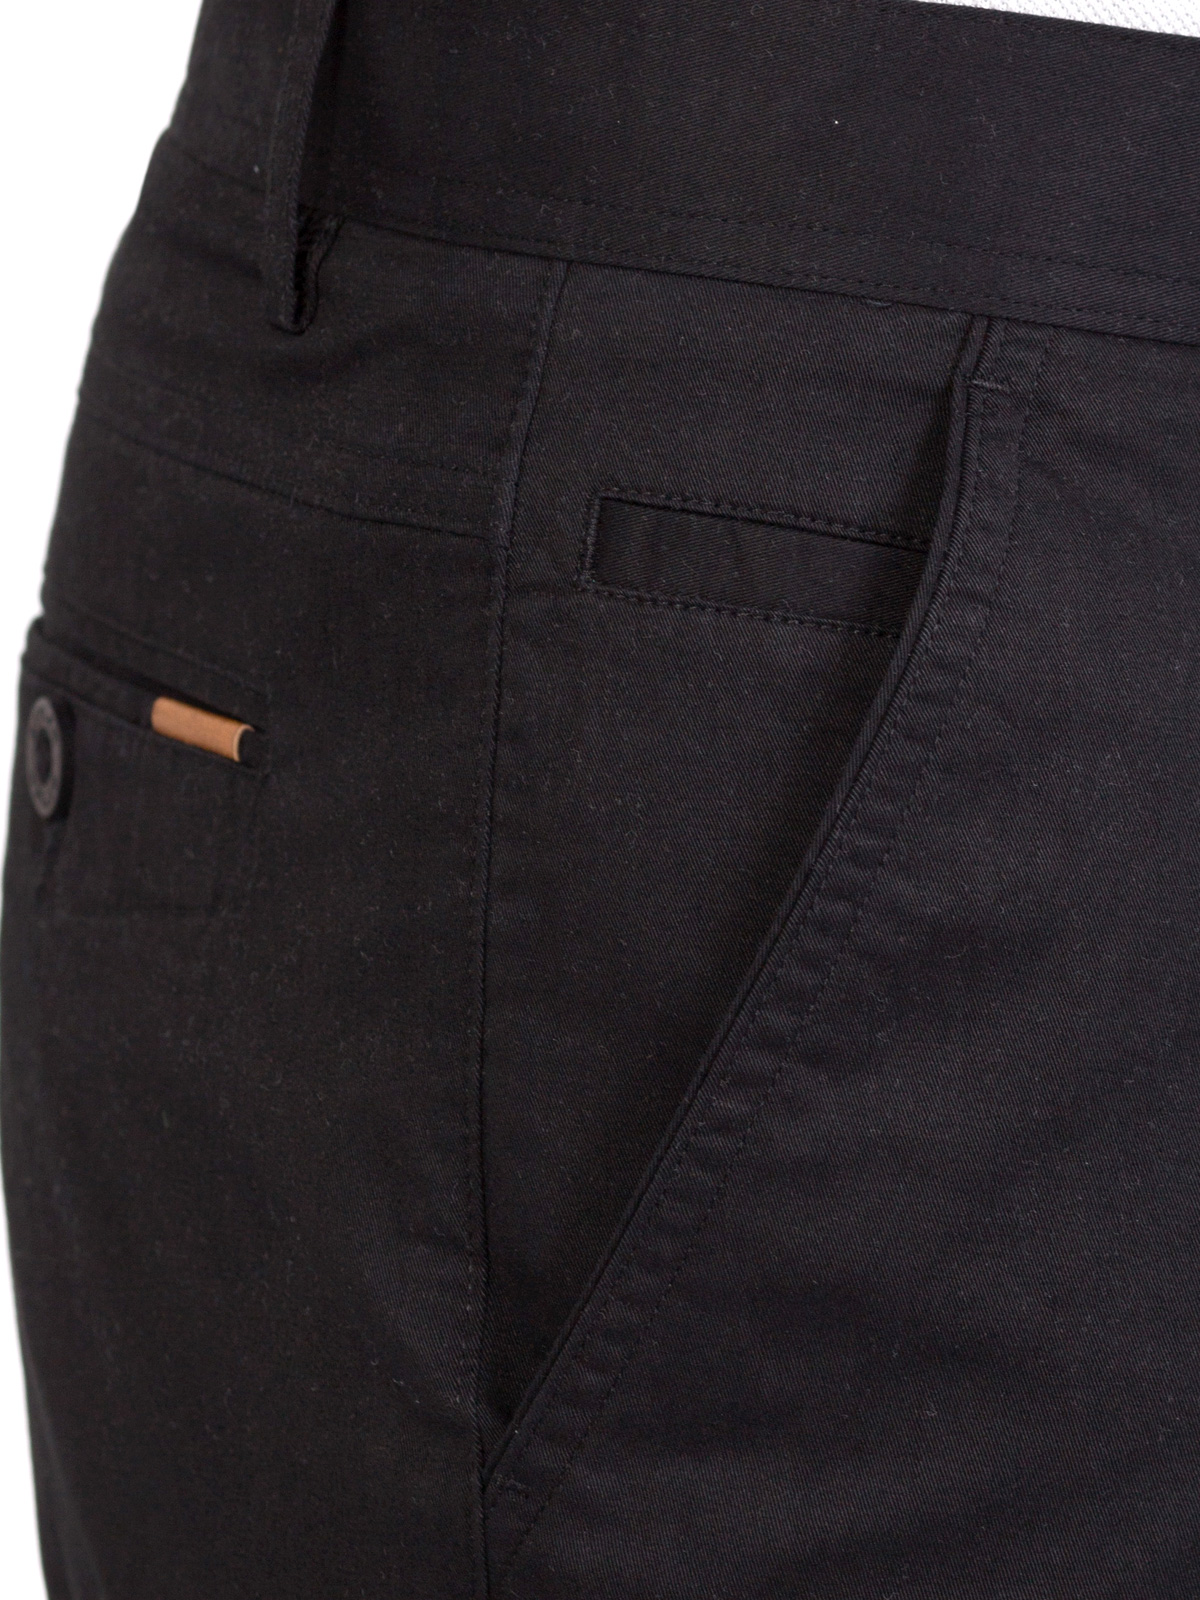  παντελόνι σε μαύρο βαμβάκι με ελαστάνη  - 63229 € 11.25 img2